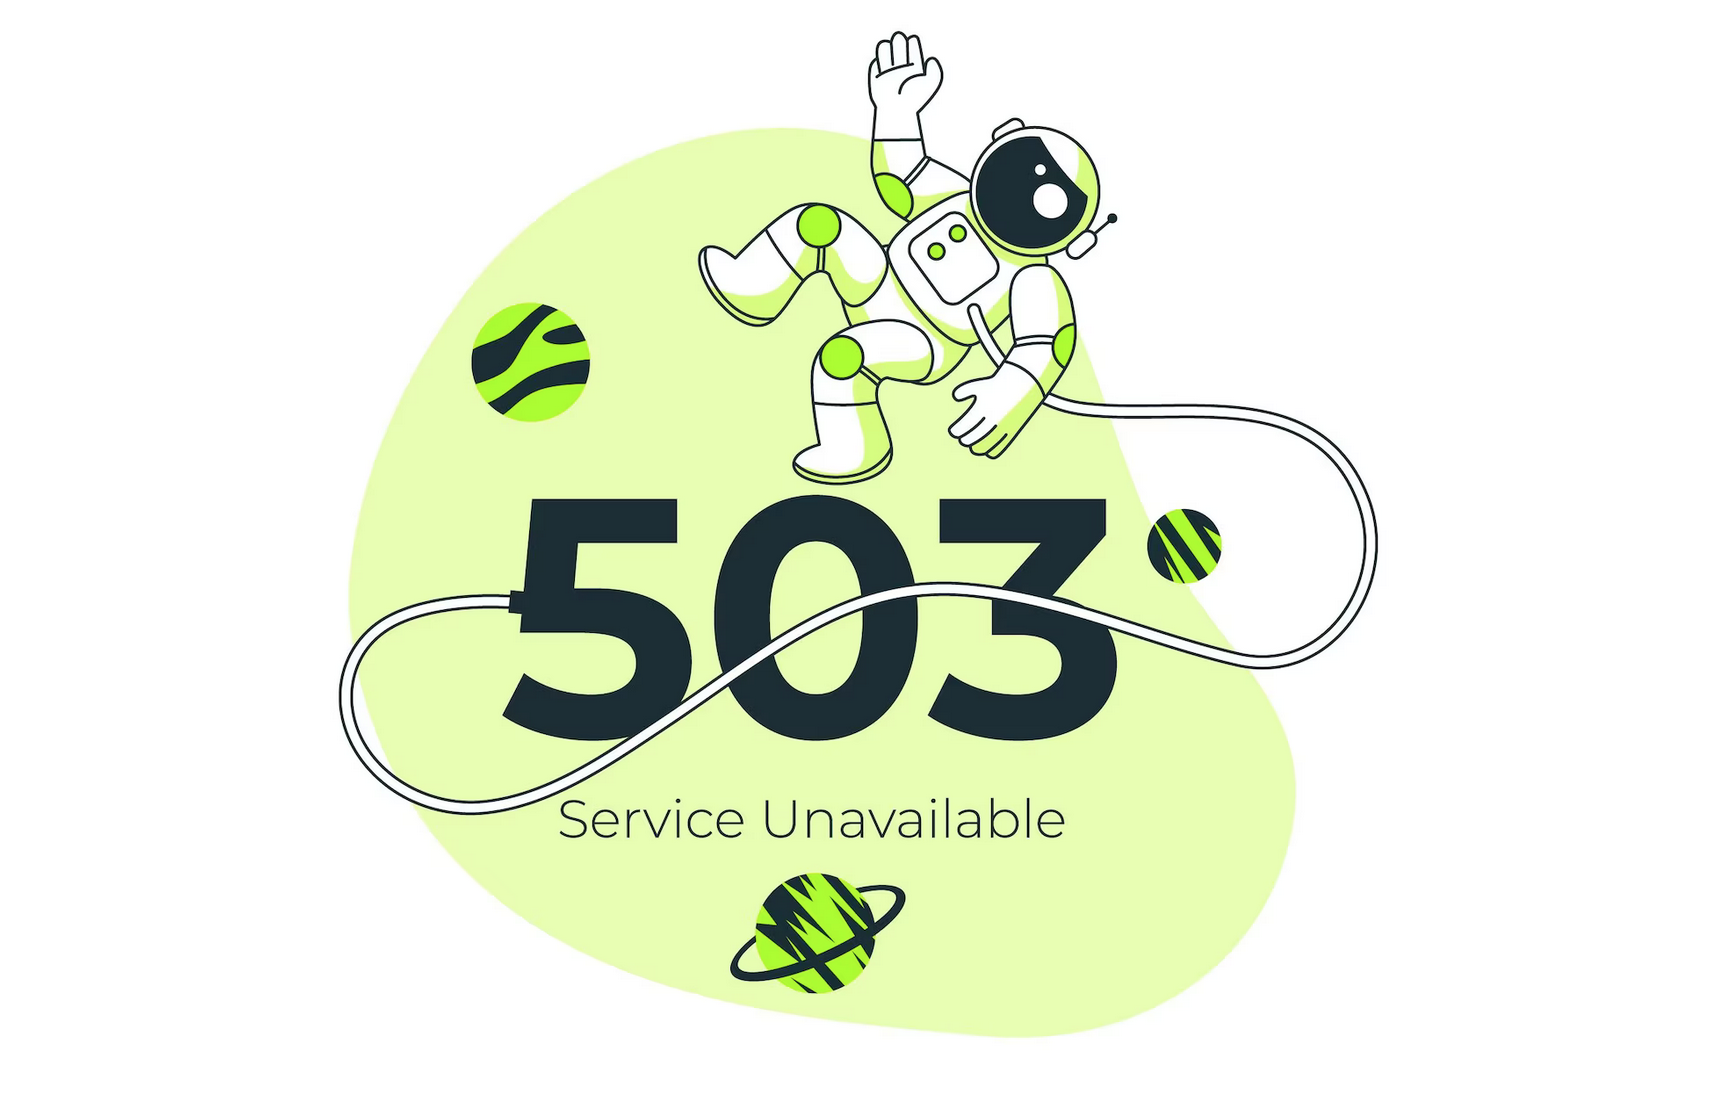 什么是503服务不可用错误